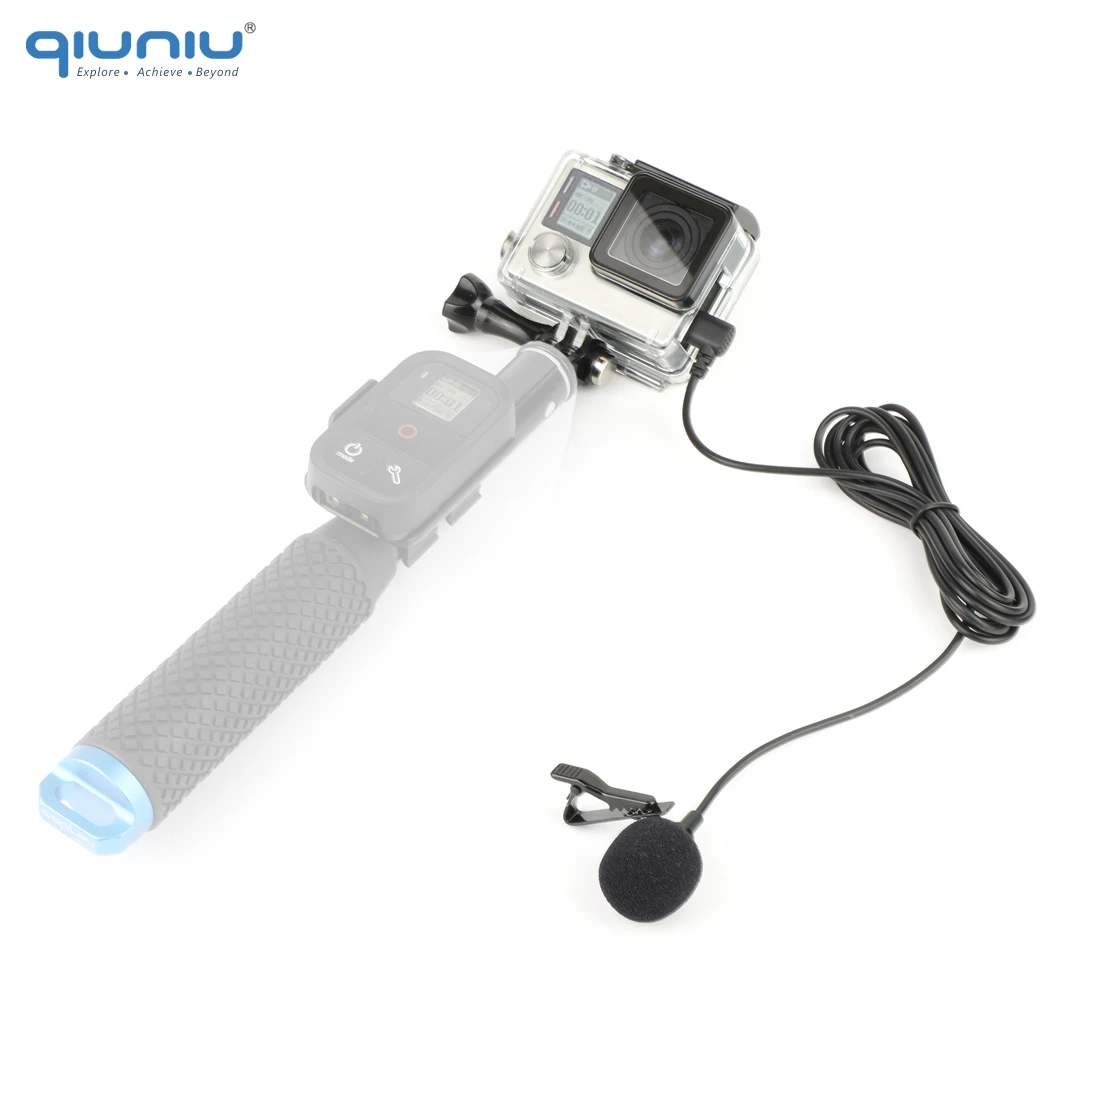 QIUNIU внешний микрофон+ прозрачный Рамный корпус чехол для GoPro Hero 4 3+ 3 Экшн камеры для Go Pro Аксессуары